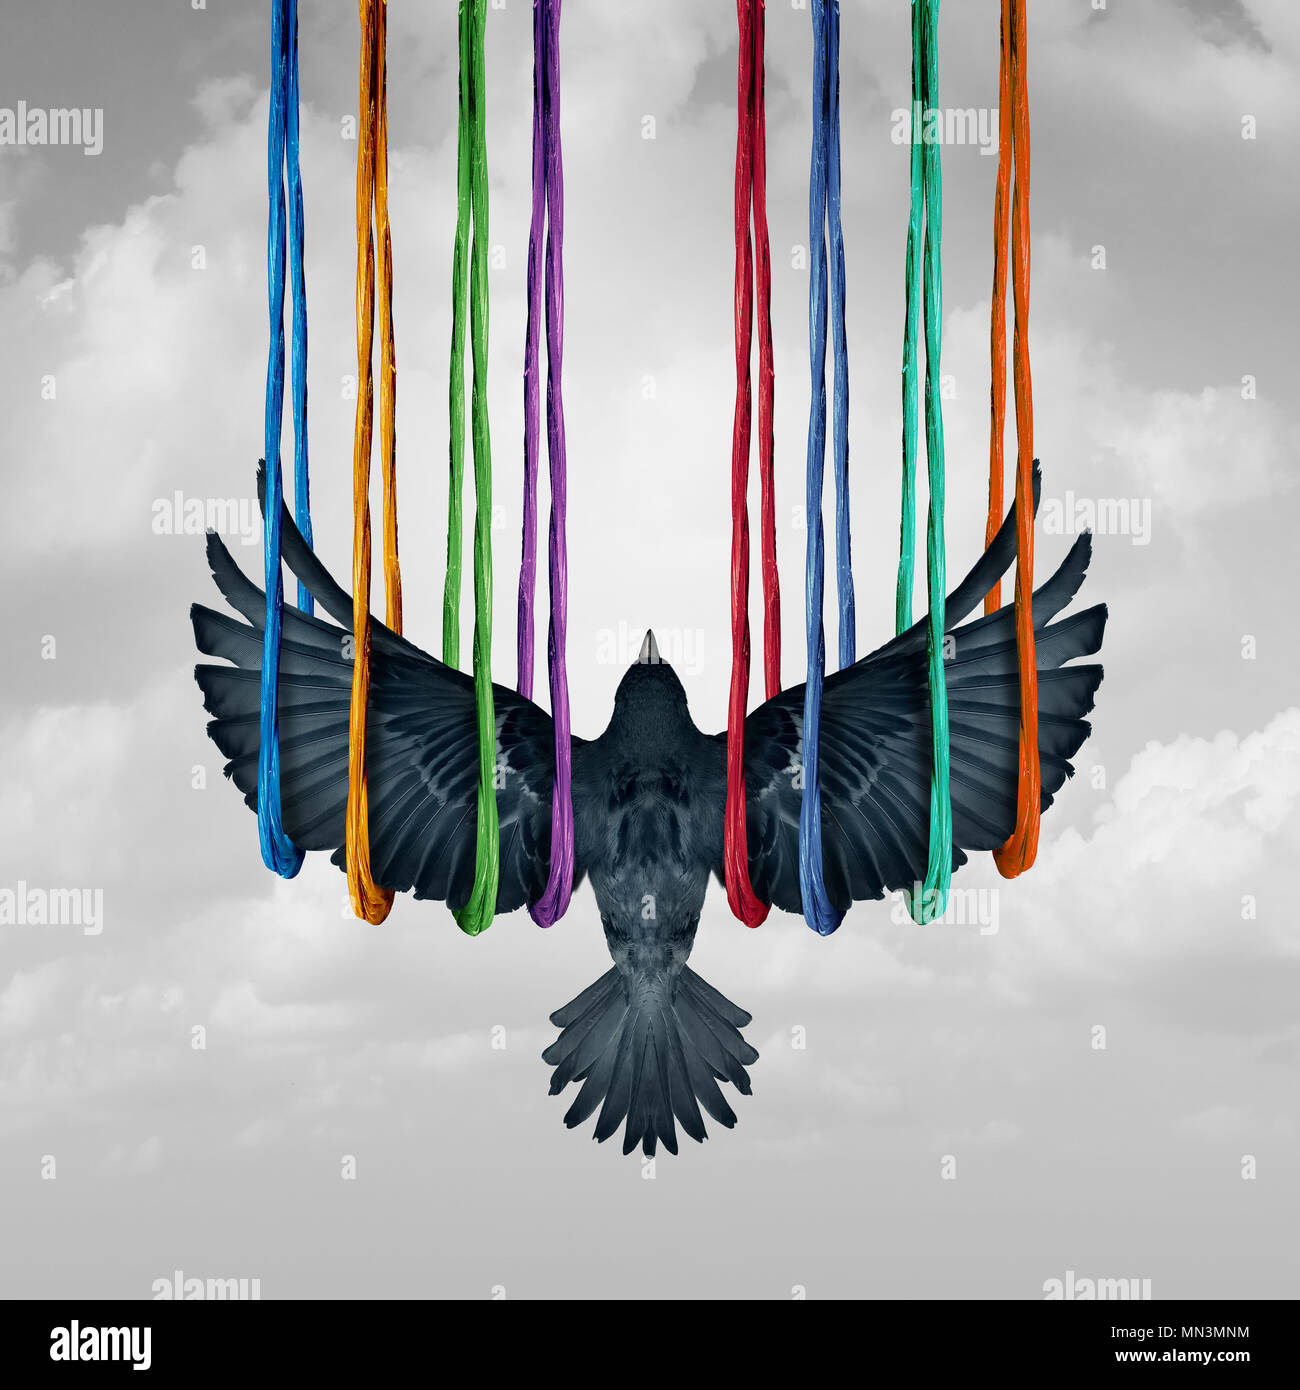 Concepto e ideas y de apoyo al sistema metáfora es una idea surrealista con un pájaro levantado por un grupo diverso de cuerdas en un estilo de ilustración 3D. Foto de stock